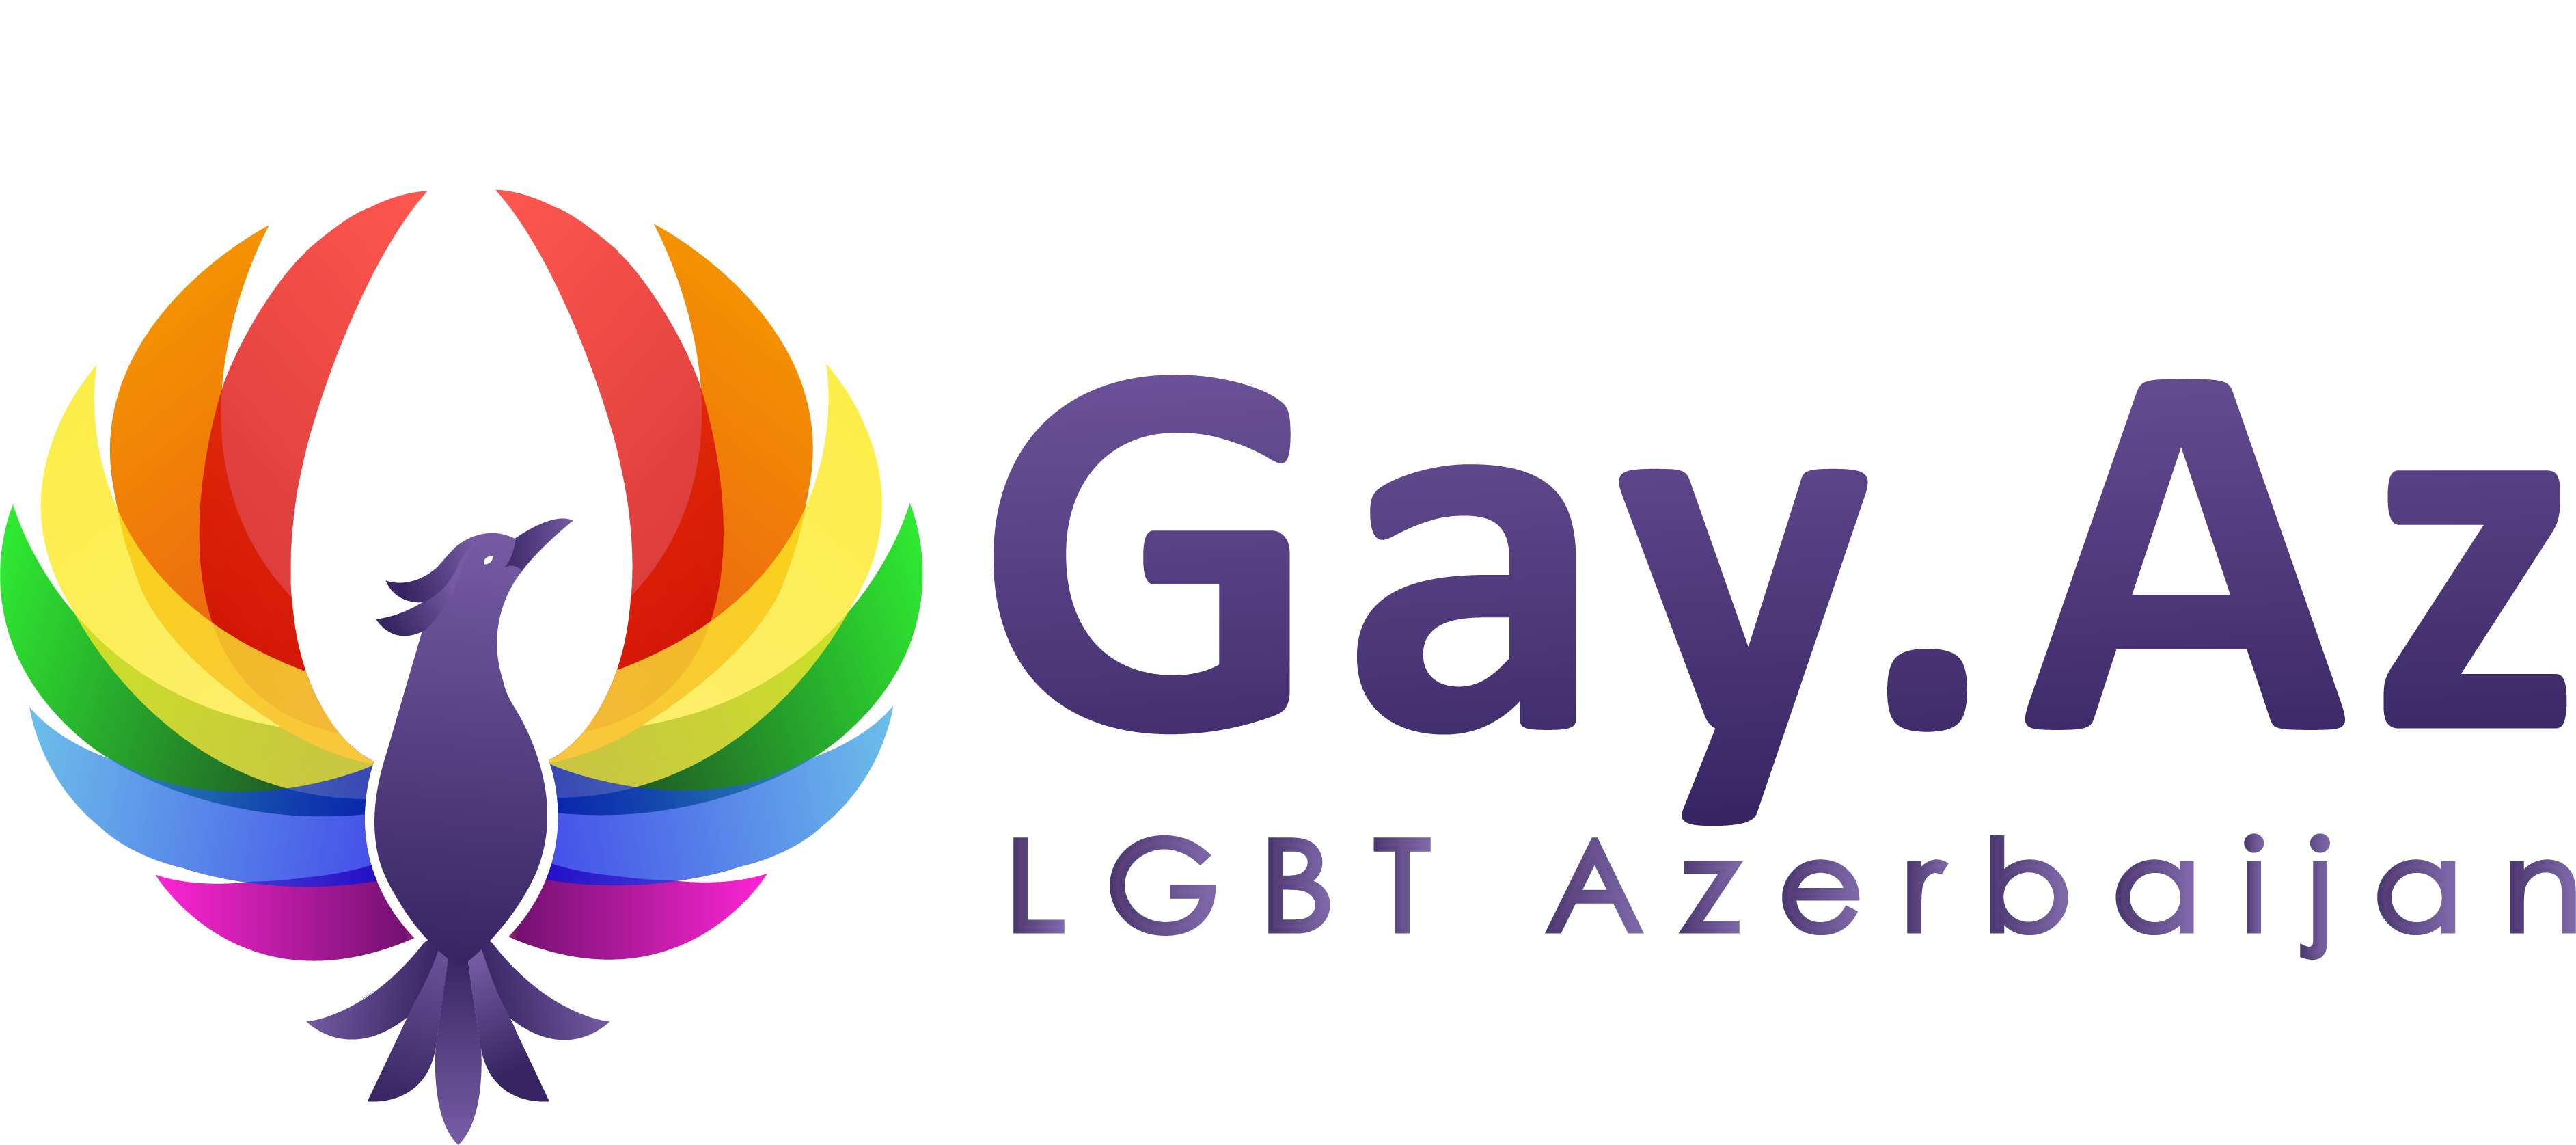 Гей знакомства в Азербайджане » LGBT Azerbaijan Gay.Az